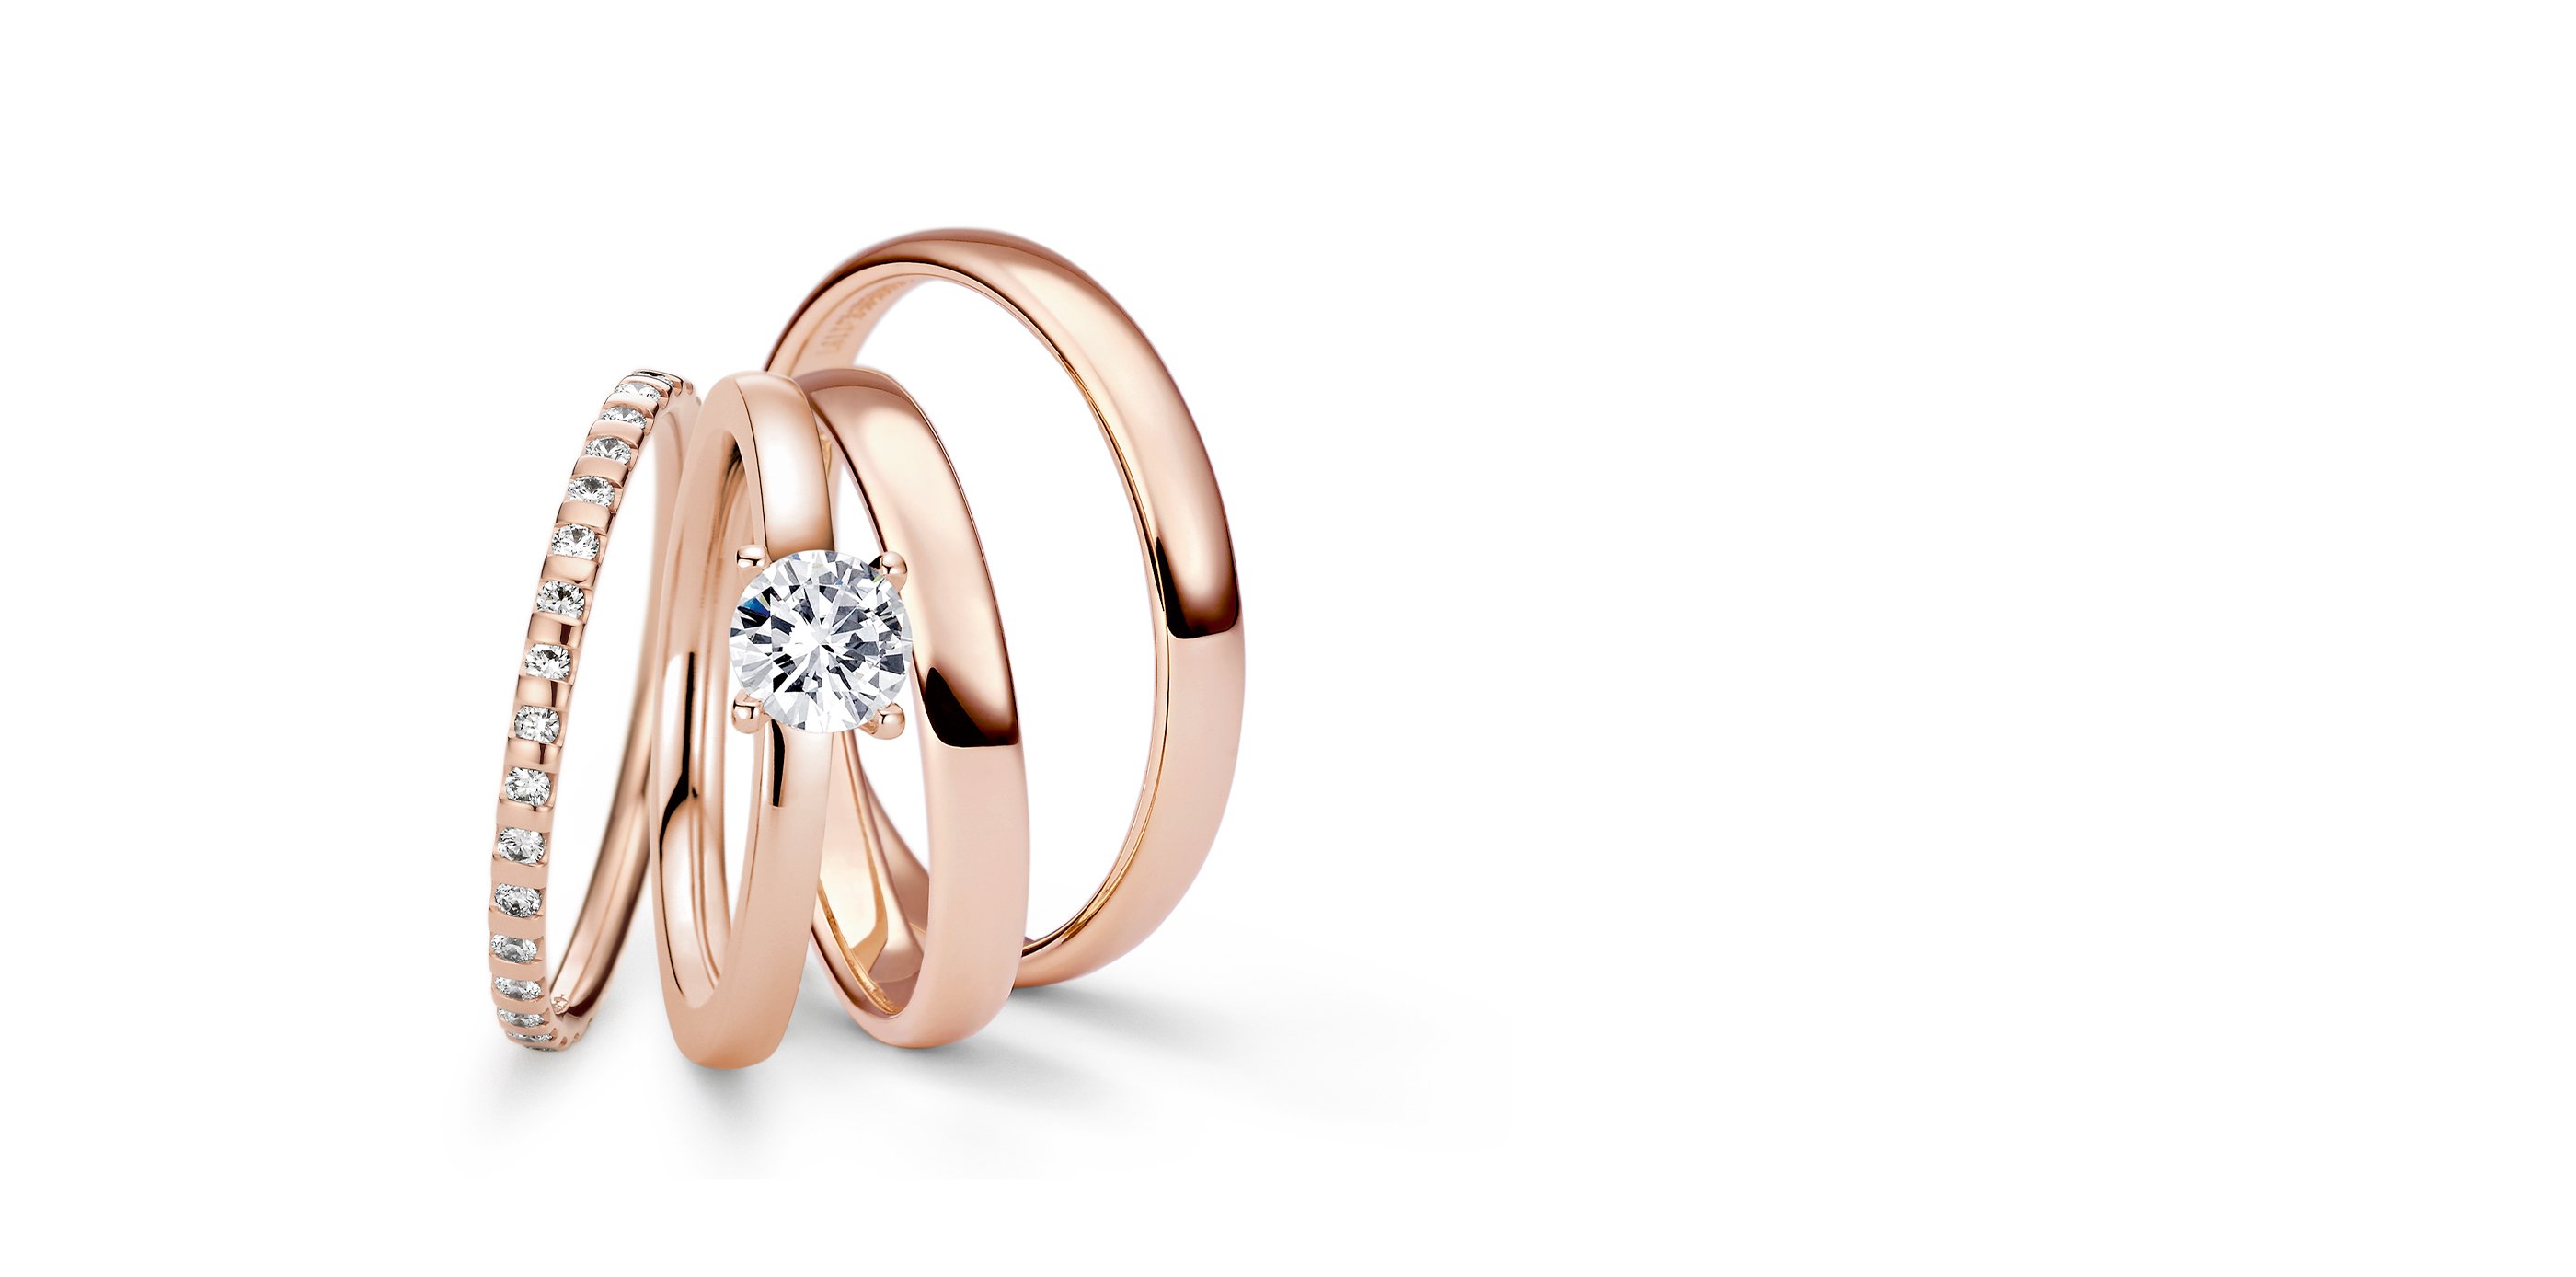 Niessing – Wedding Rings, Tension Rings Rings, Engagement